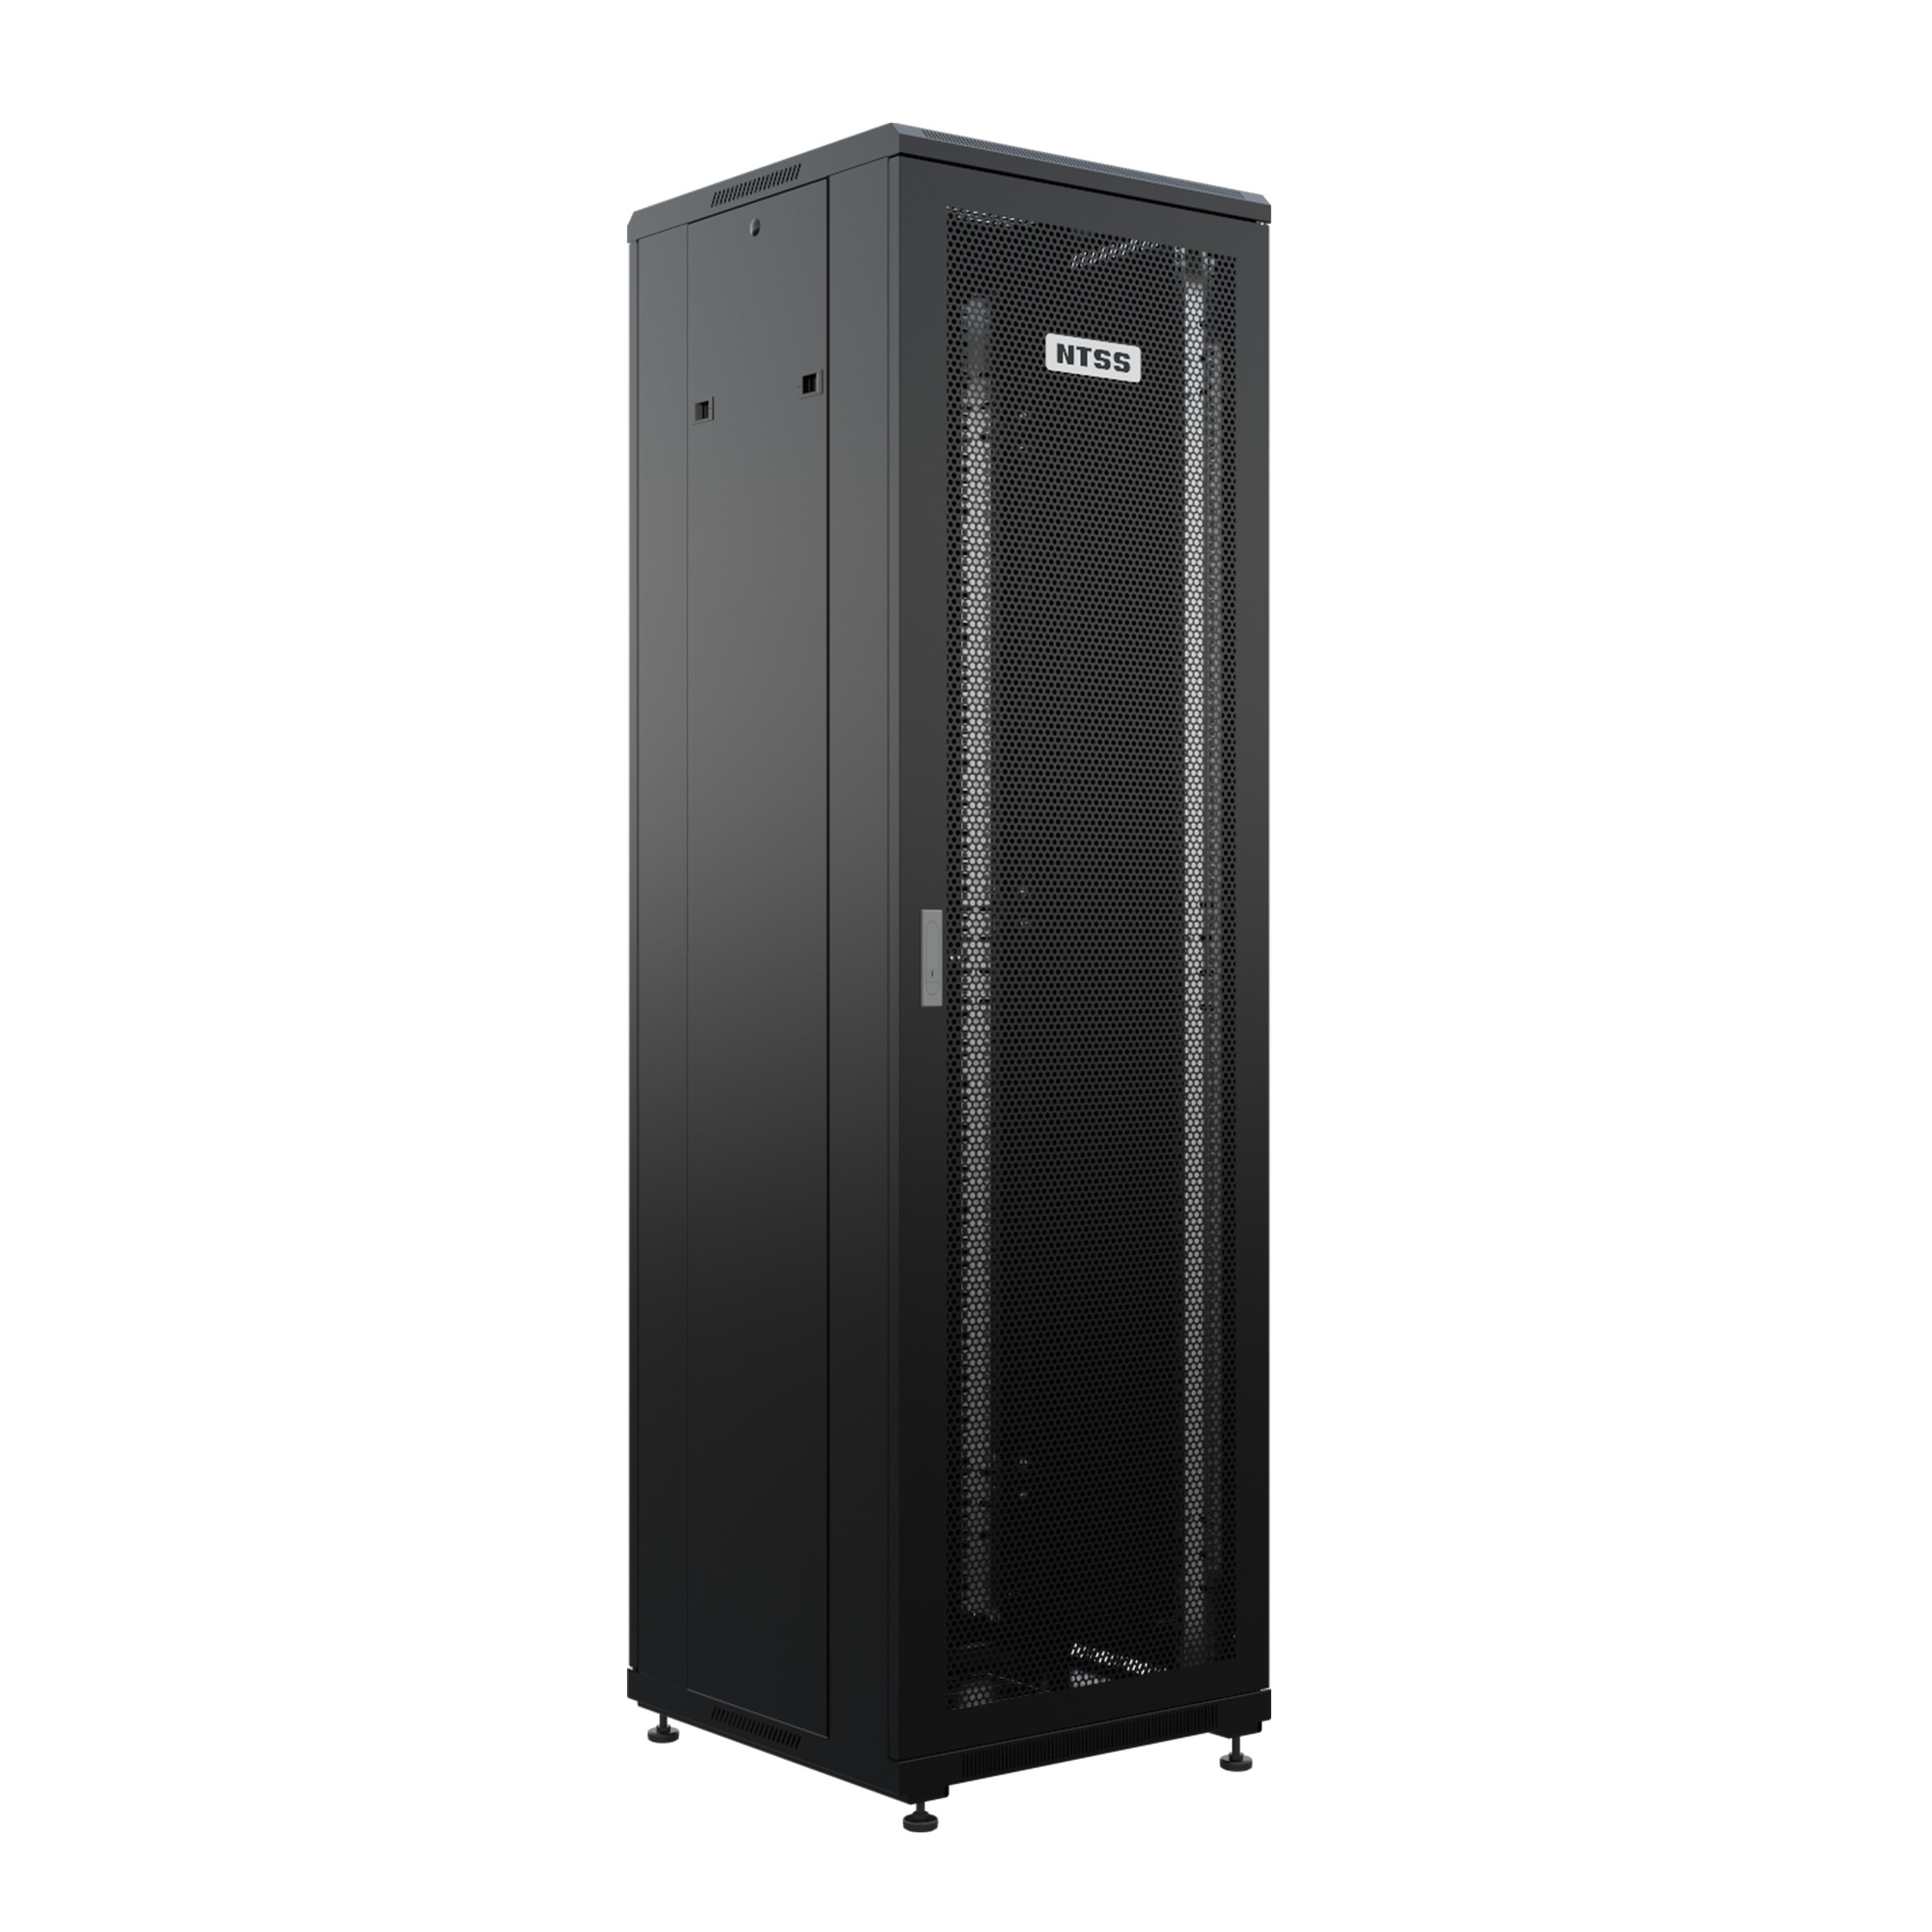 Шкаф напольный универсальный серверный NTSS R 47U 600х600мм, 4 профиля 19, двери перфорированная и сплошная металл, боковые стенки съемные, регулируемые опоры, разобранный, черный RAL 9005